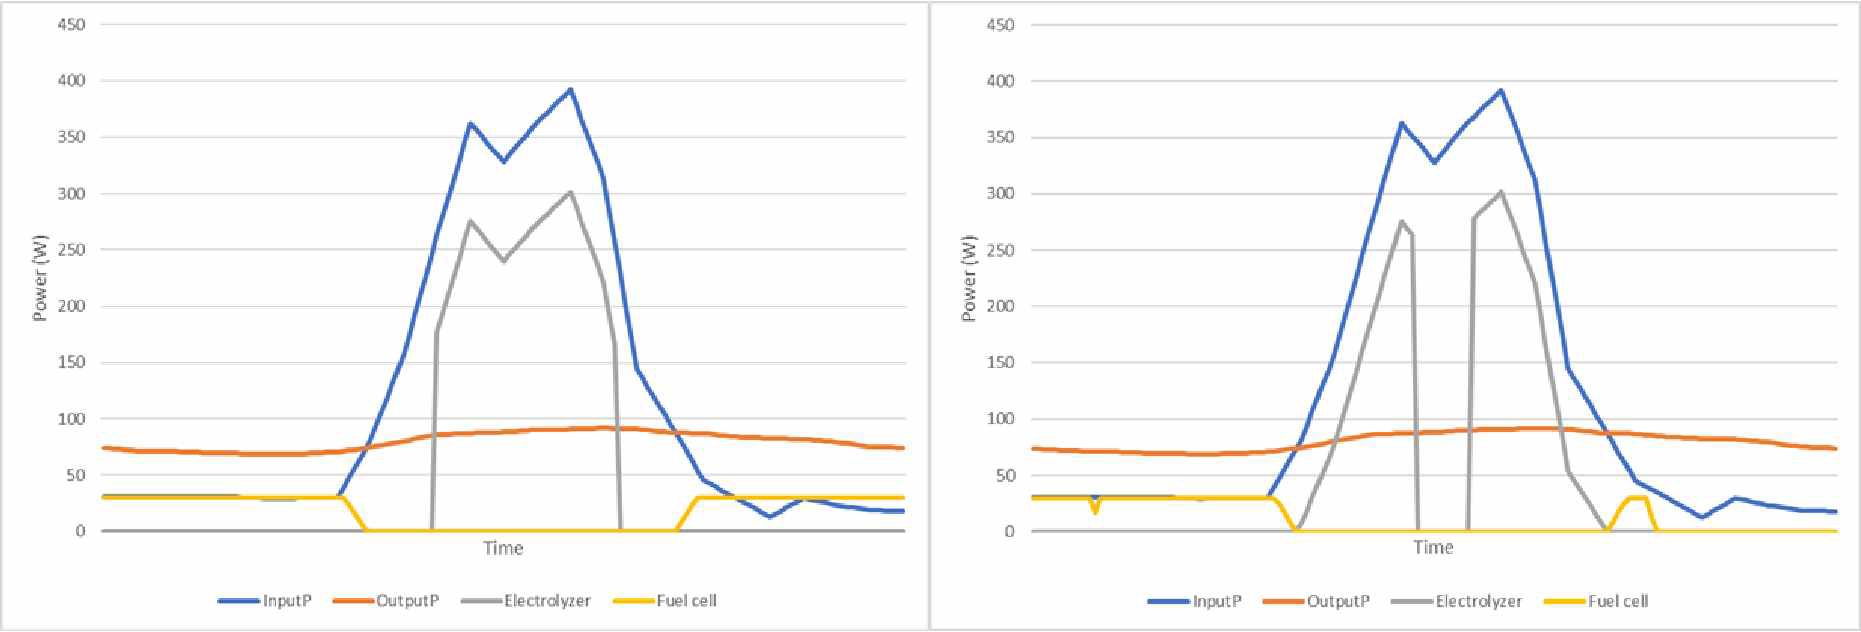 휴리스틱(좌)와 최적 분배(우) 모델의 가을 기준 일간 수전해/연료전지 전력 흐름 비교